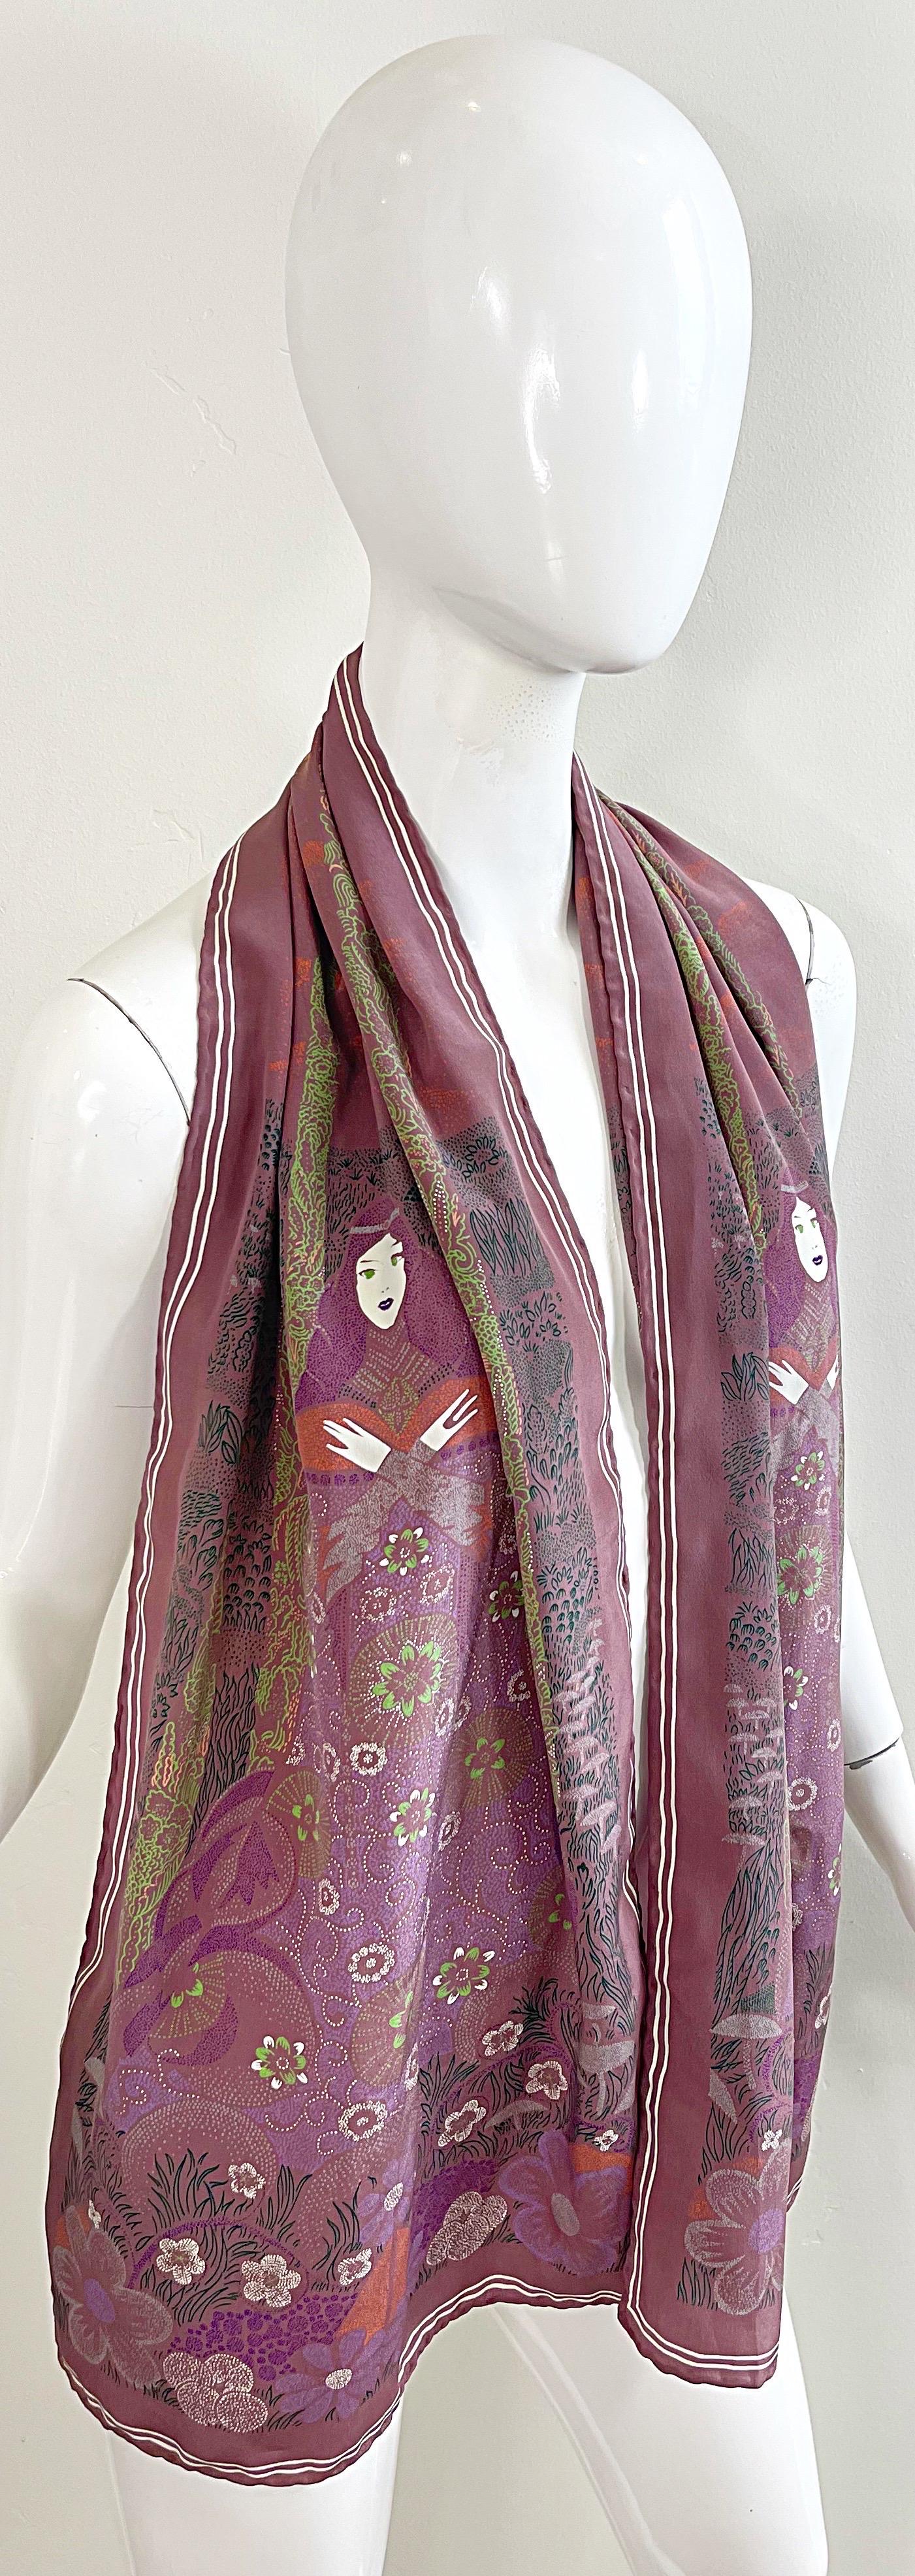 Bottega Veneta 1981 Klimt inspired Vintage 1980s Boho 80s Silk Scarf Top  For Sale 9